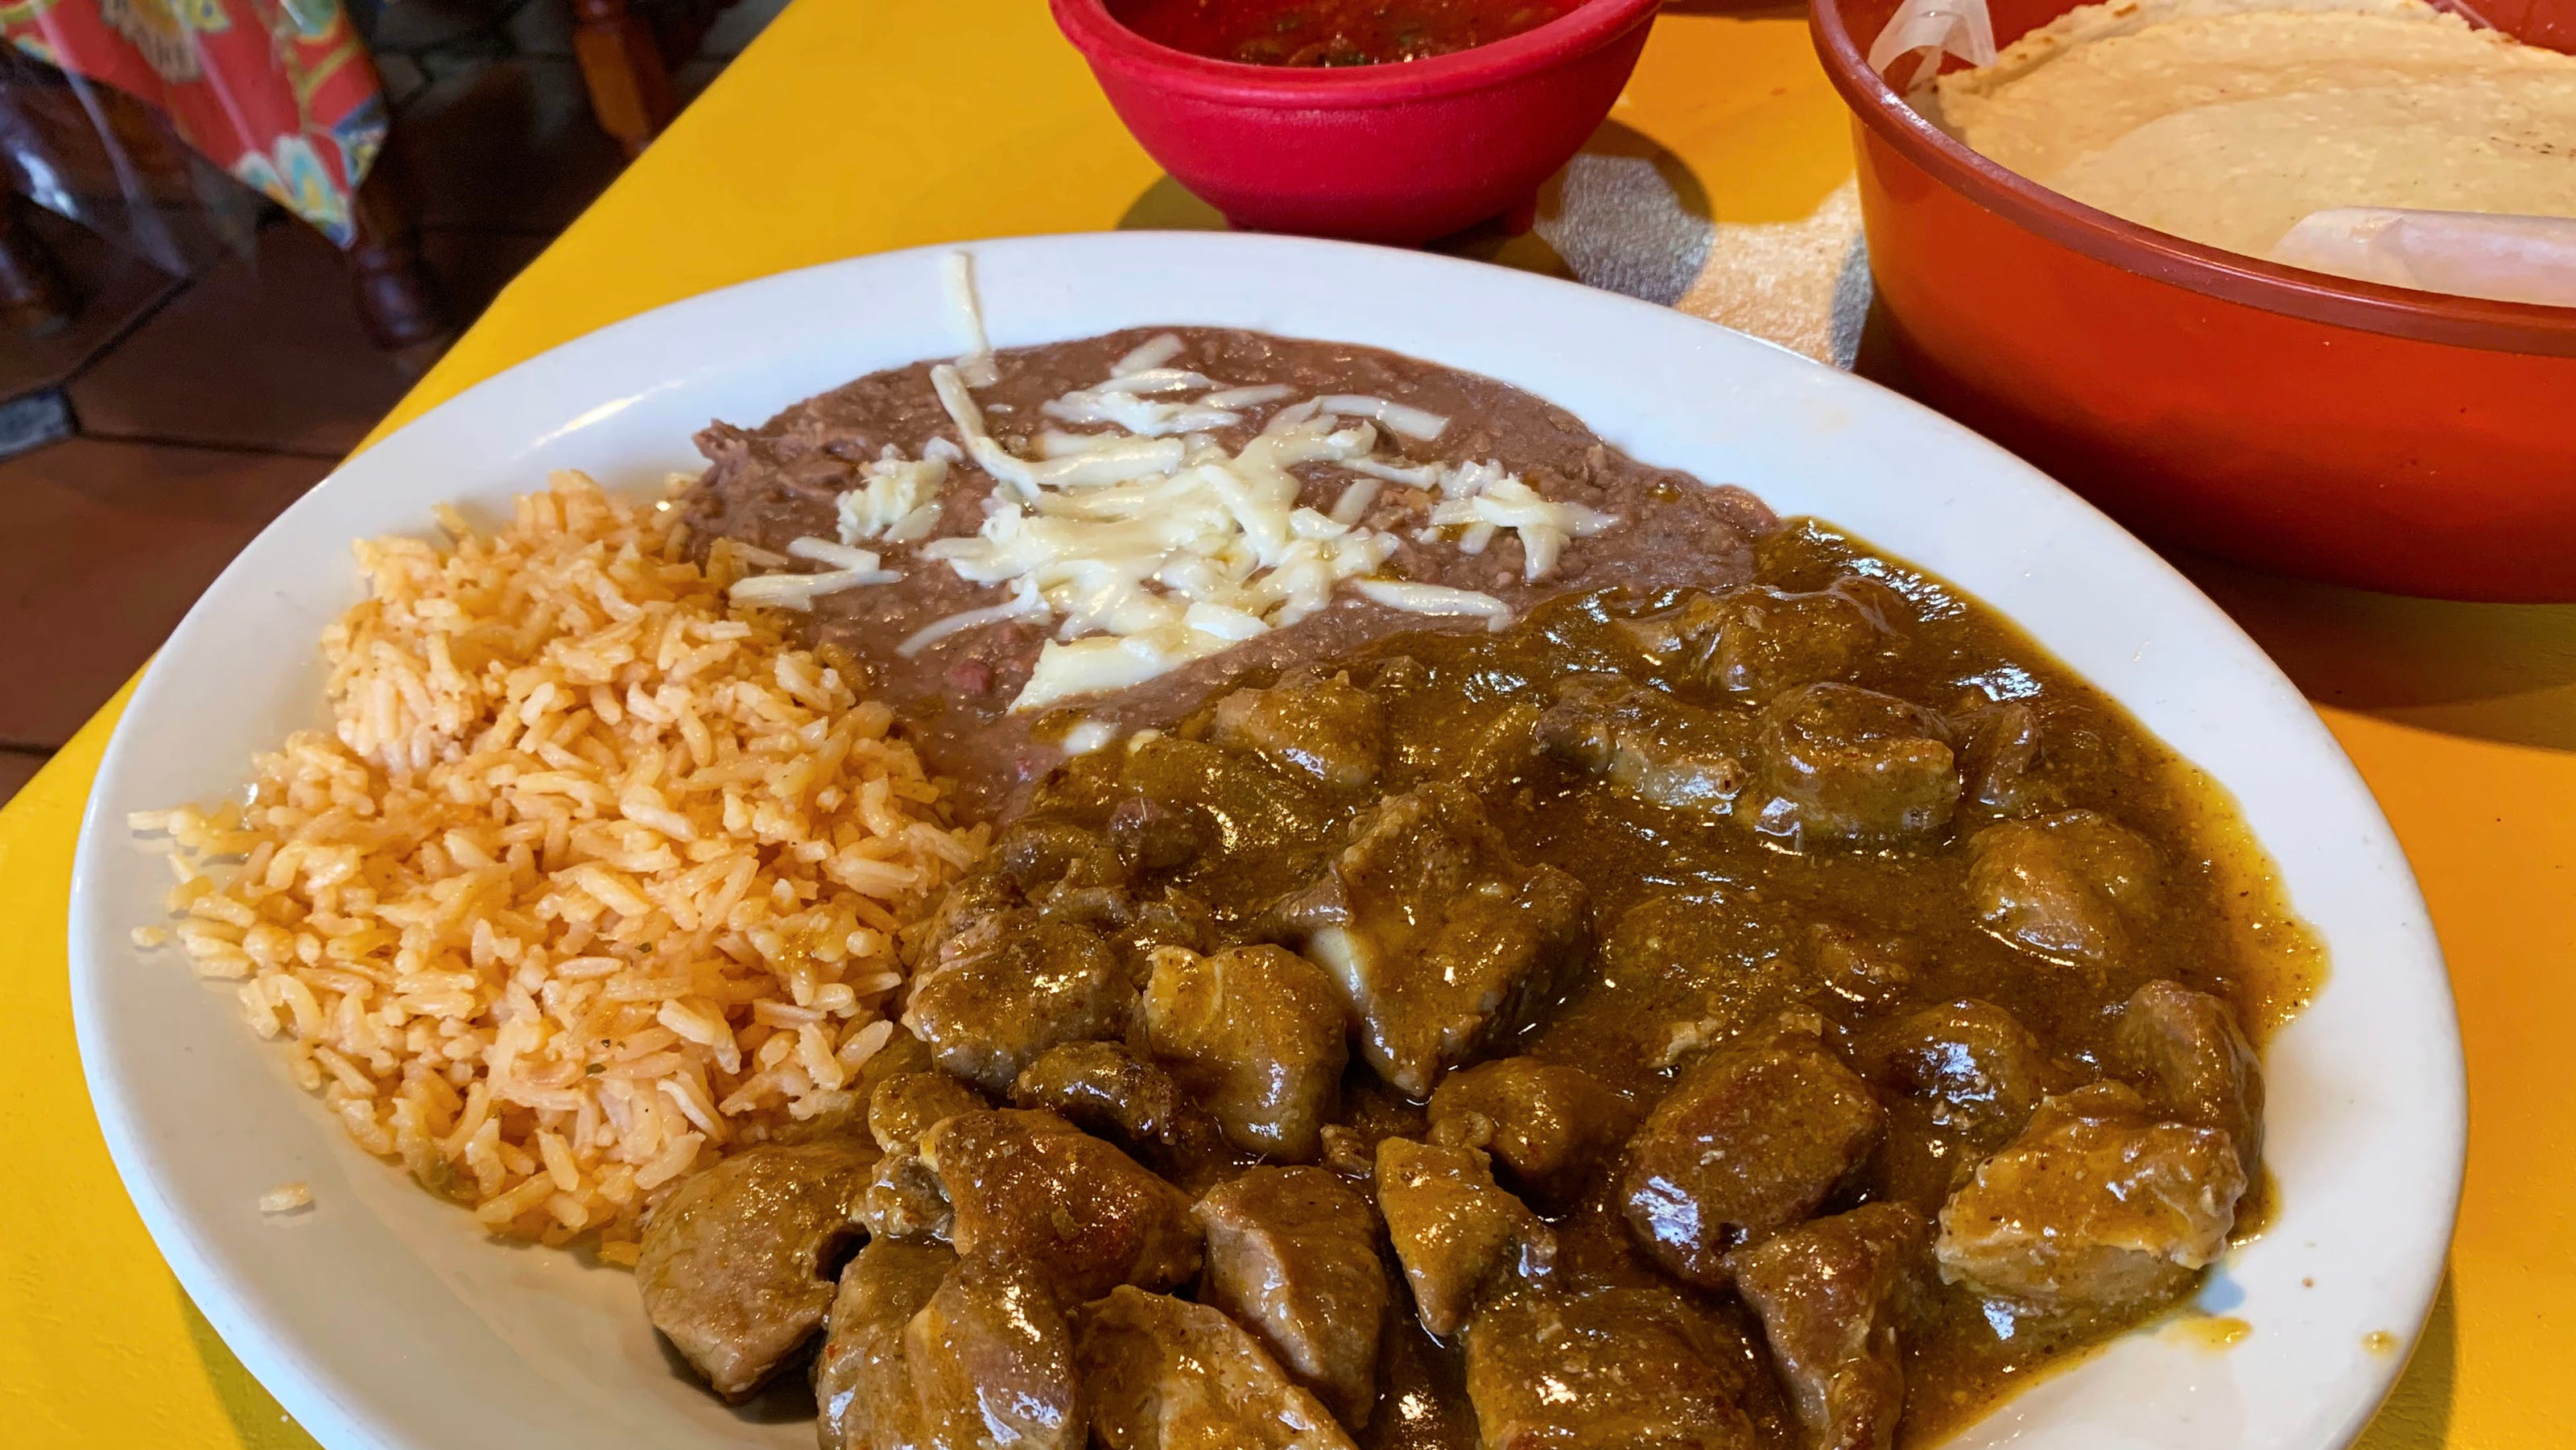 Comida mexicana en Glendale: Barbacoa, huraches, al pastor y aguachile